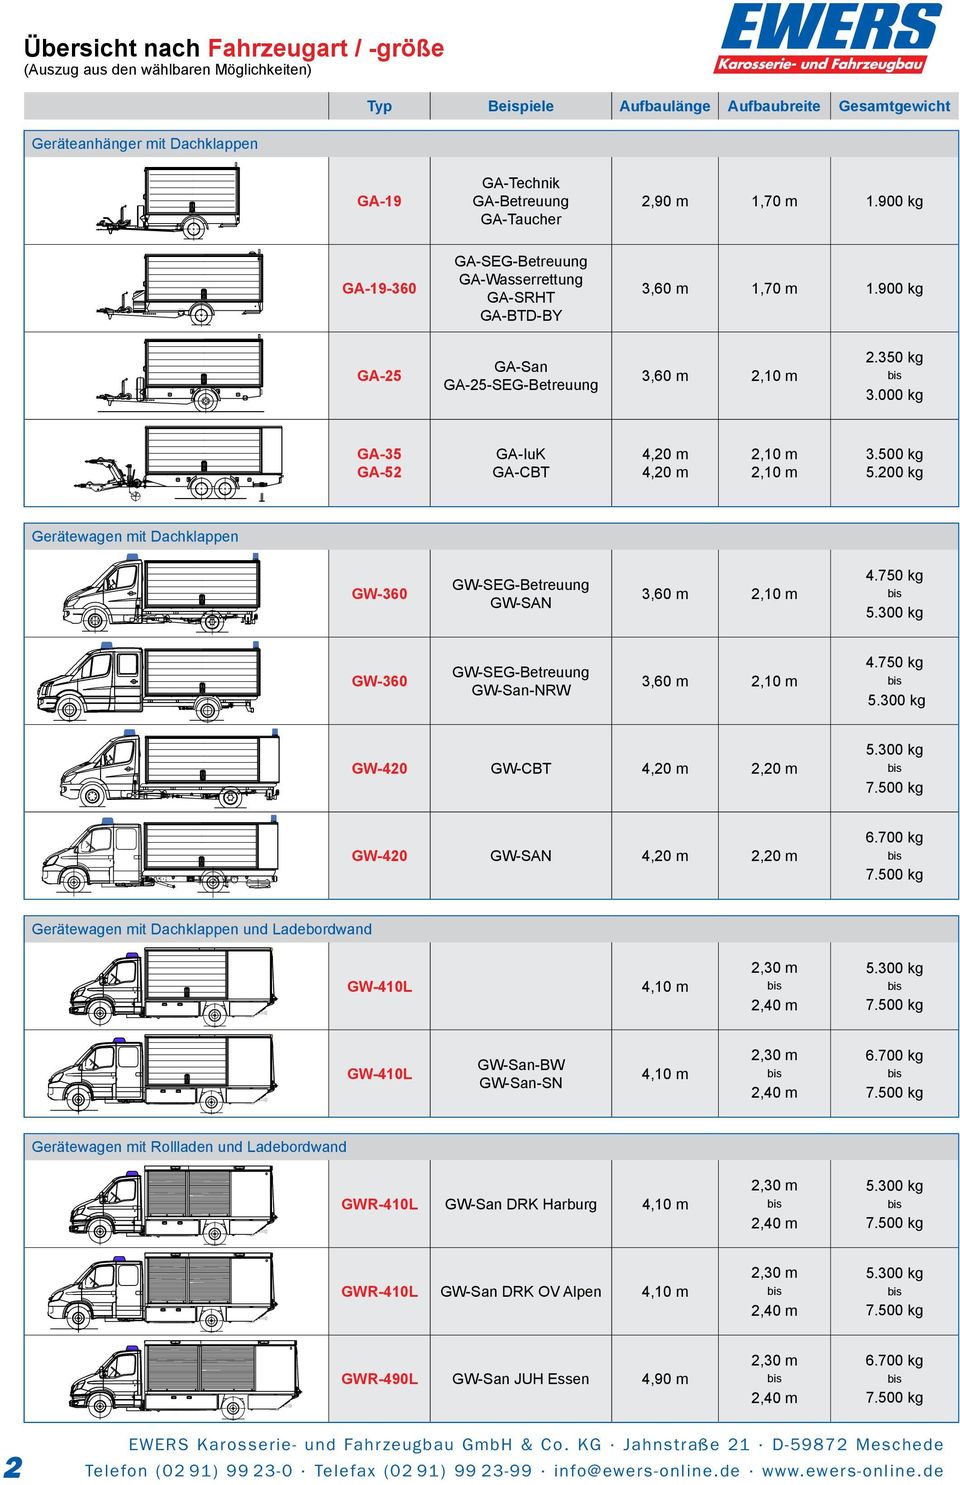 900 kg GA-25 GA-San GA-25-SEG-Betreuung 3,60 m 2,10 m GA-35 GA-52 GA-IuK GA-CBT 4,20 m 4,20 m 2,10 m 2,10 m GW-360 GW-SEG-Betreuung GW-SAN 3,60 m 2,10 m GW-360 GW-SEG-Betreuung GW-San-NRW 3,60 m 2,10